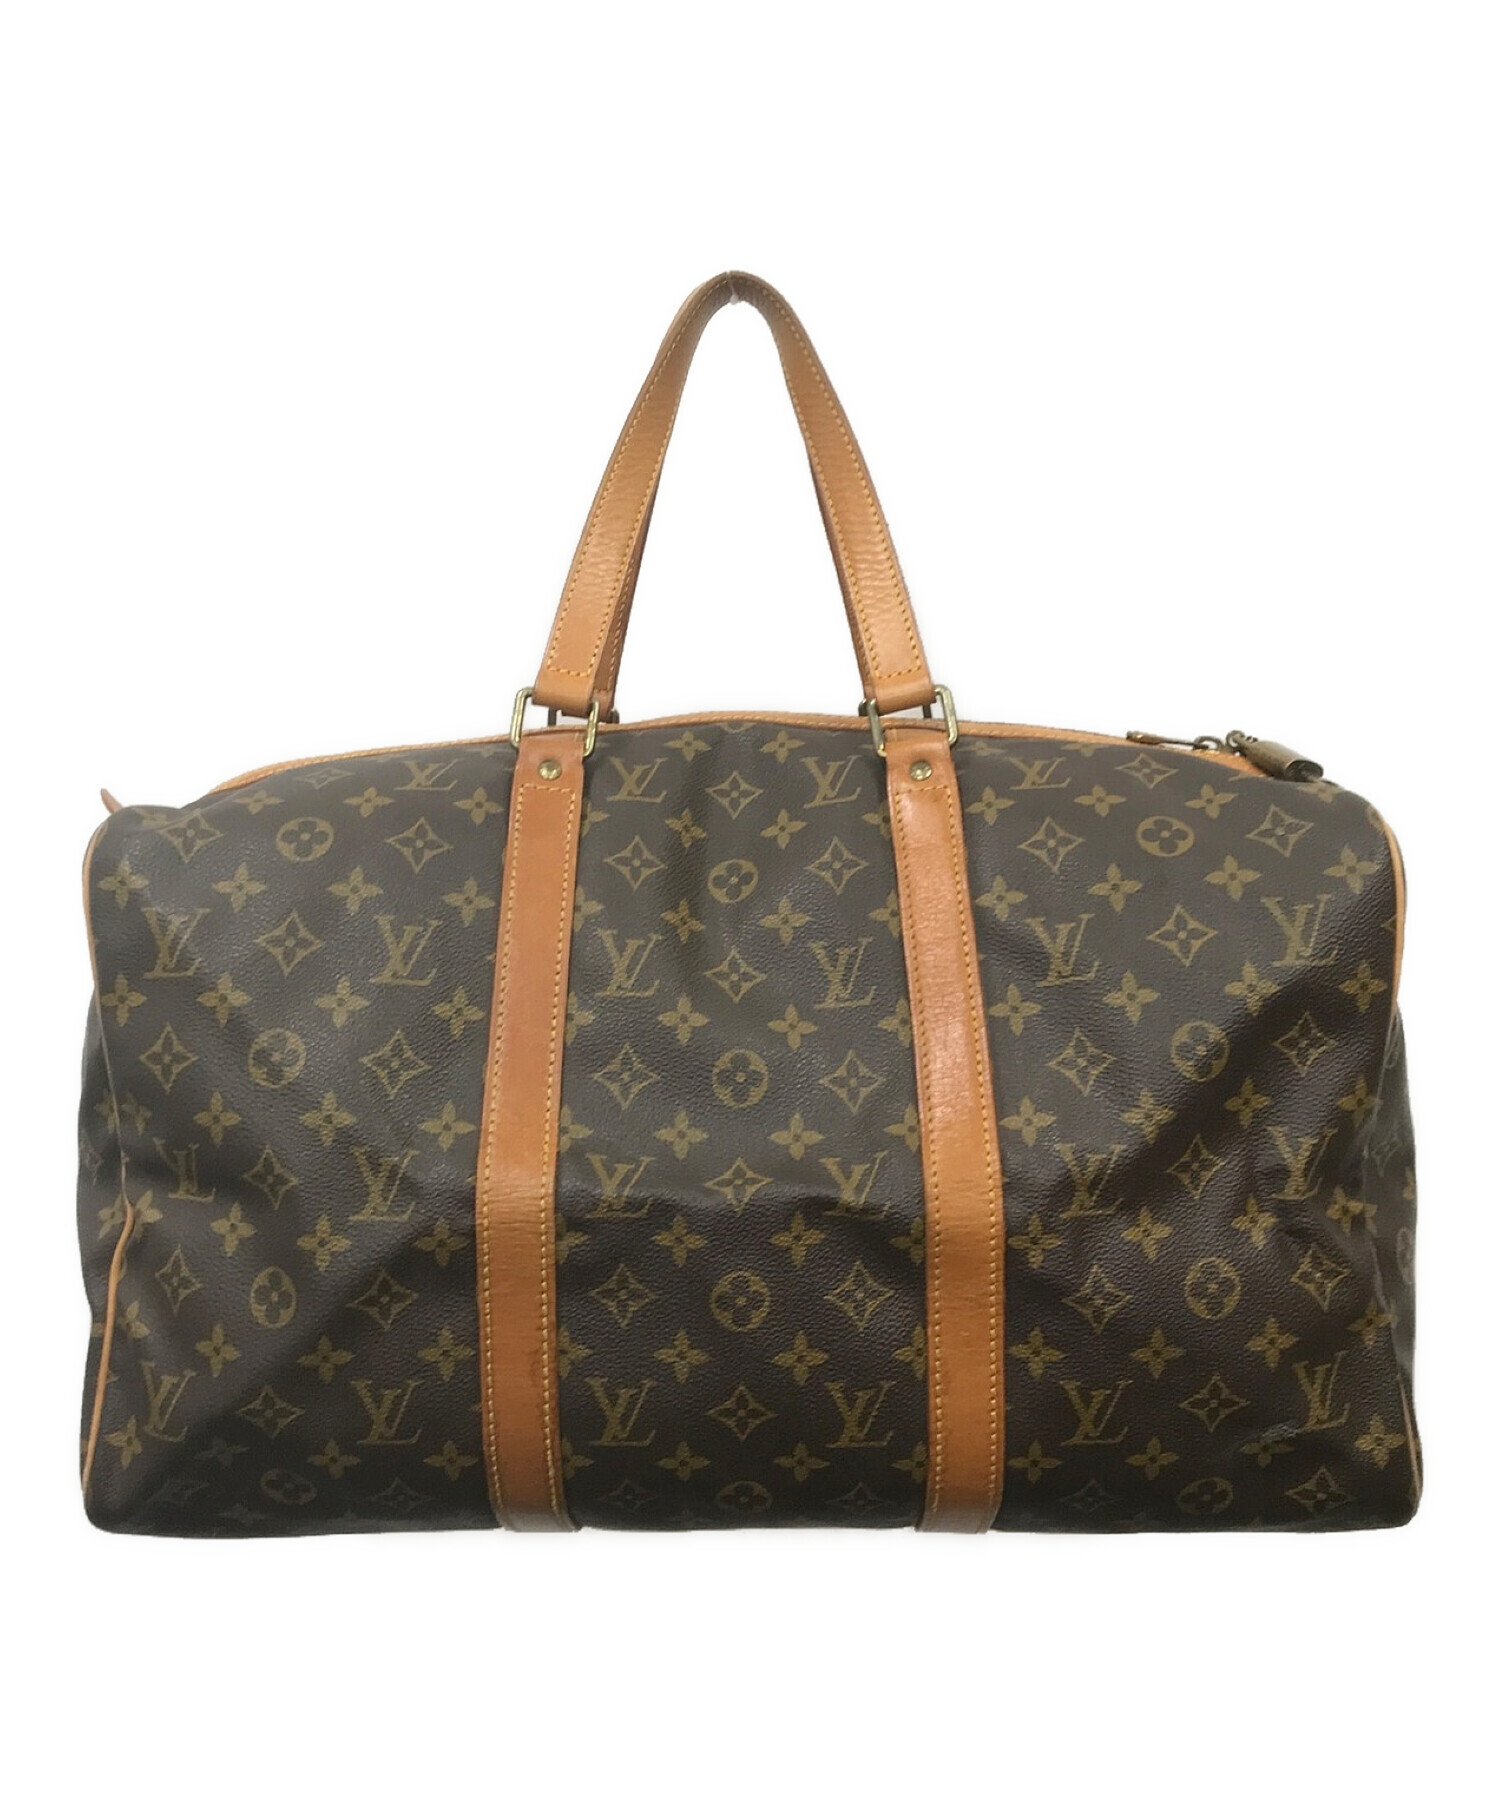 26,600円Louis Vuitton Boston bag ルイ・ヴィトン ボストンバッグ